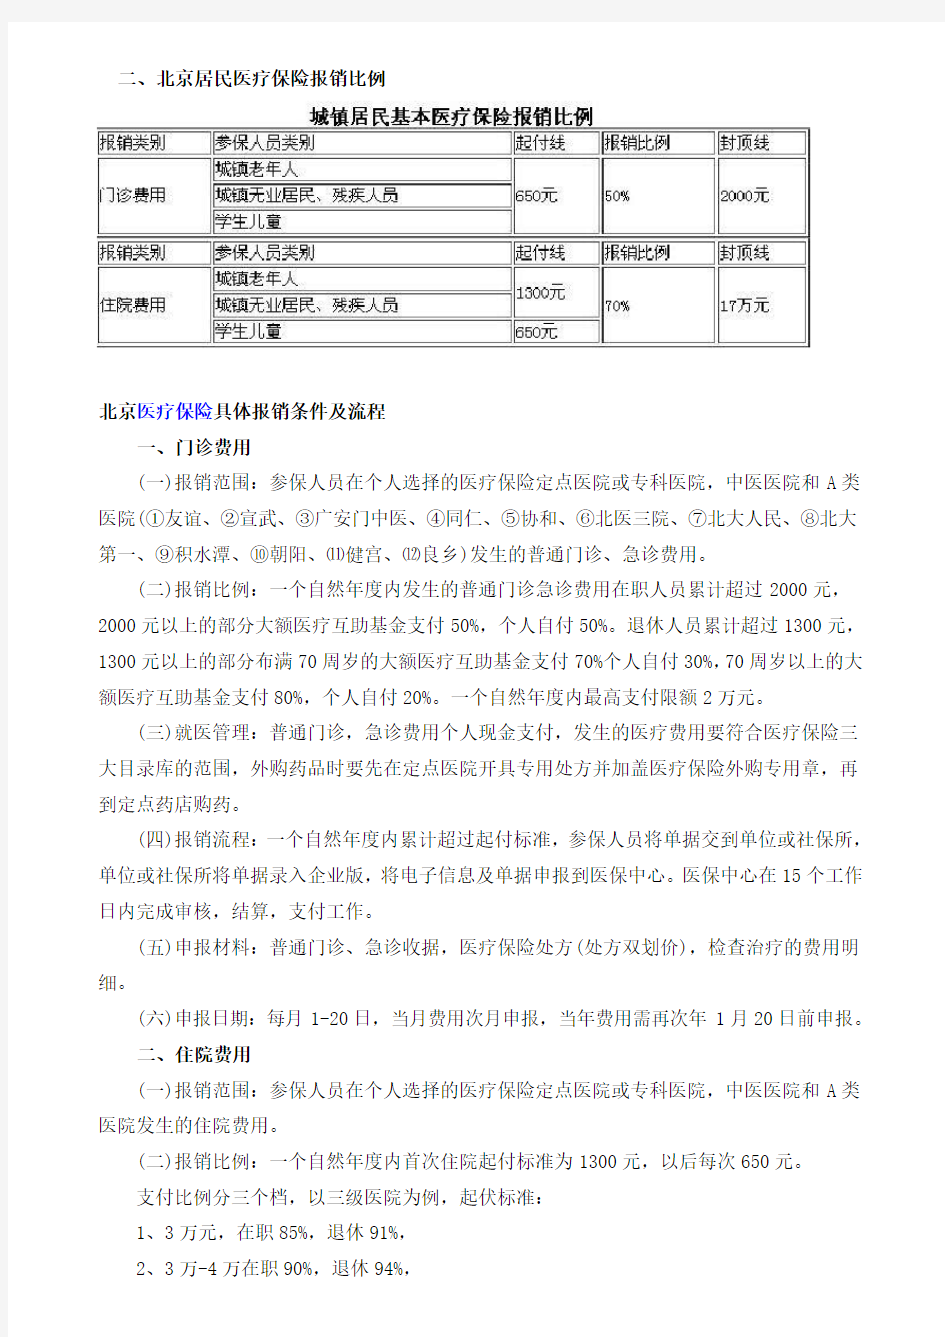 1、北京医保报销比例一览表(2013最新)